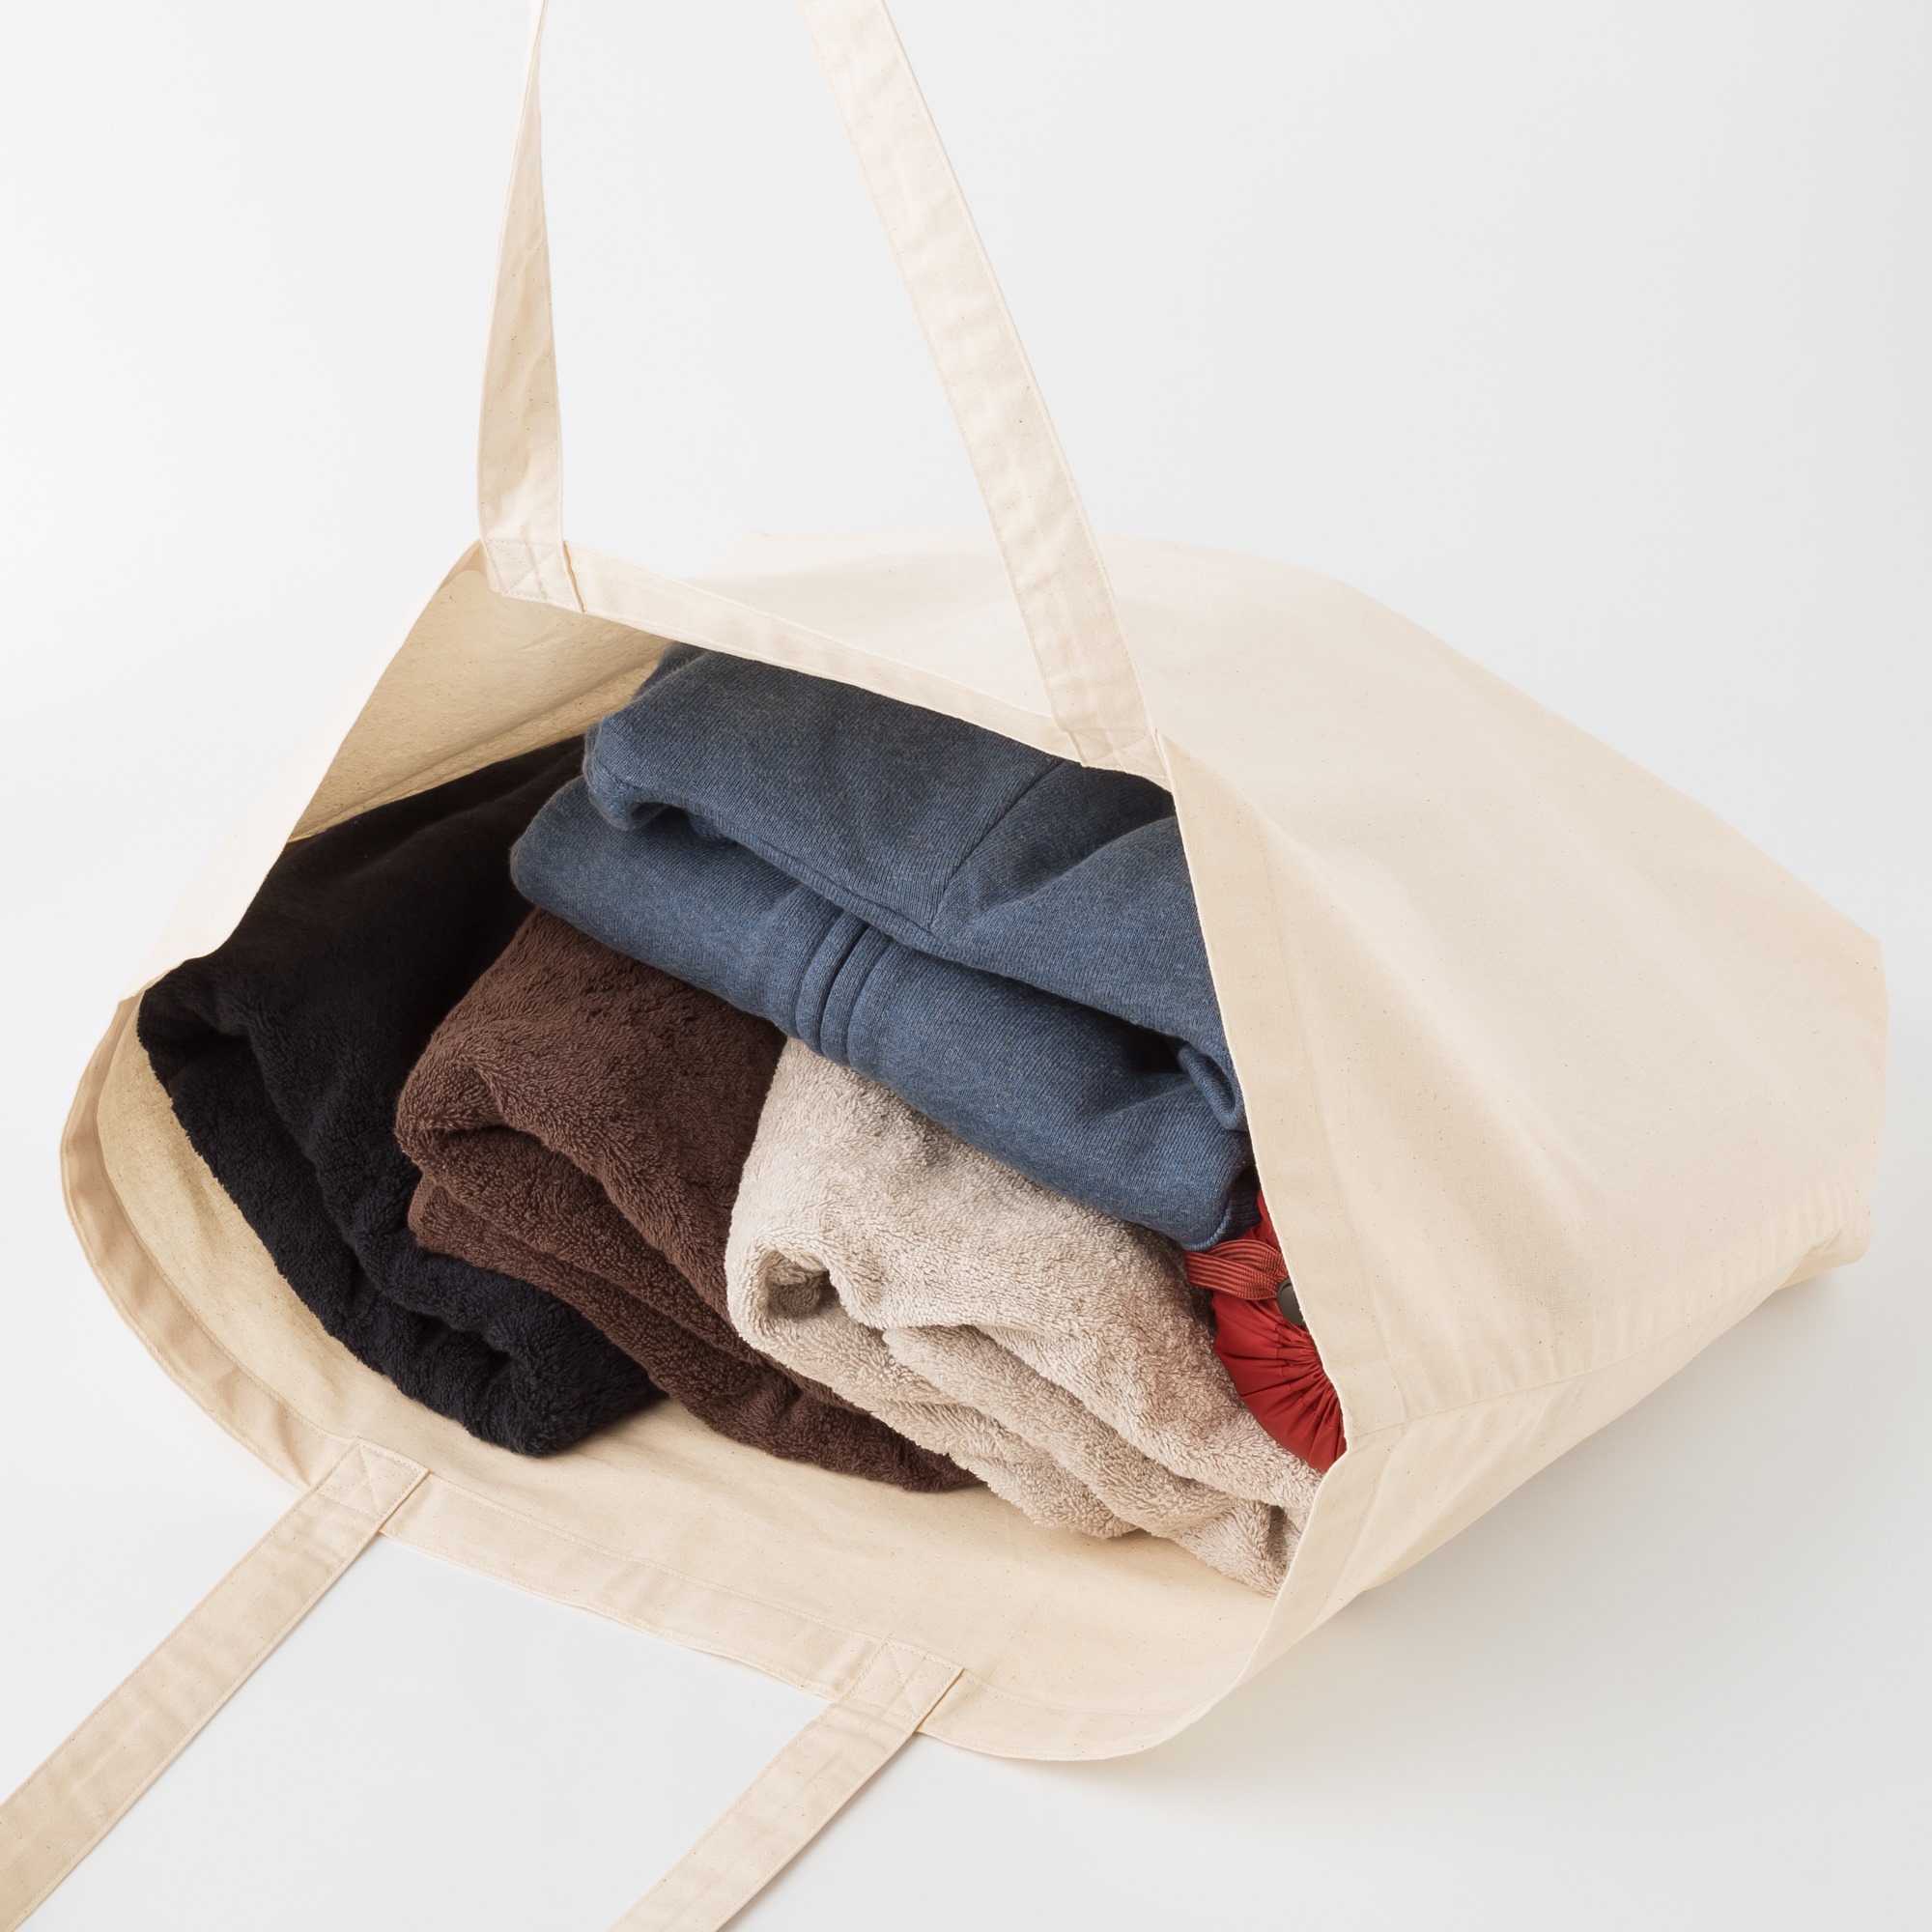 优衣库鼓励消费者自备环保袋。-图摘自优衣库马来西亚脸书-